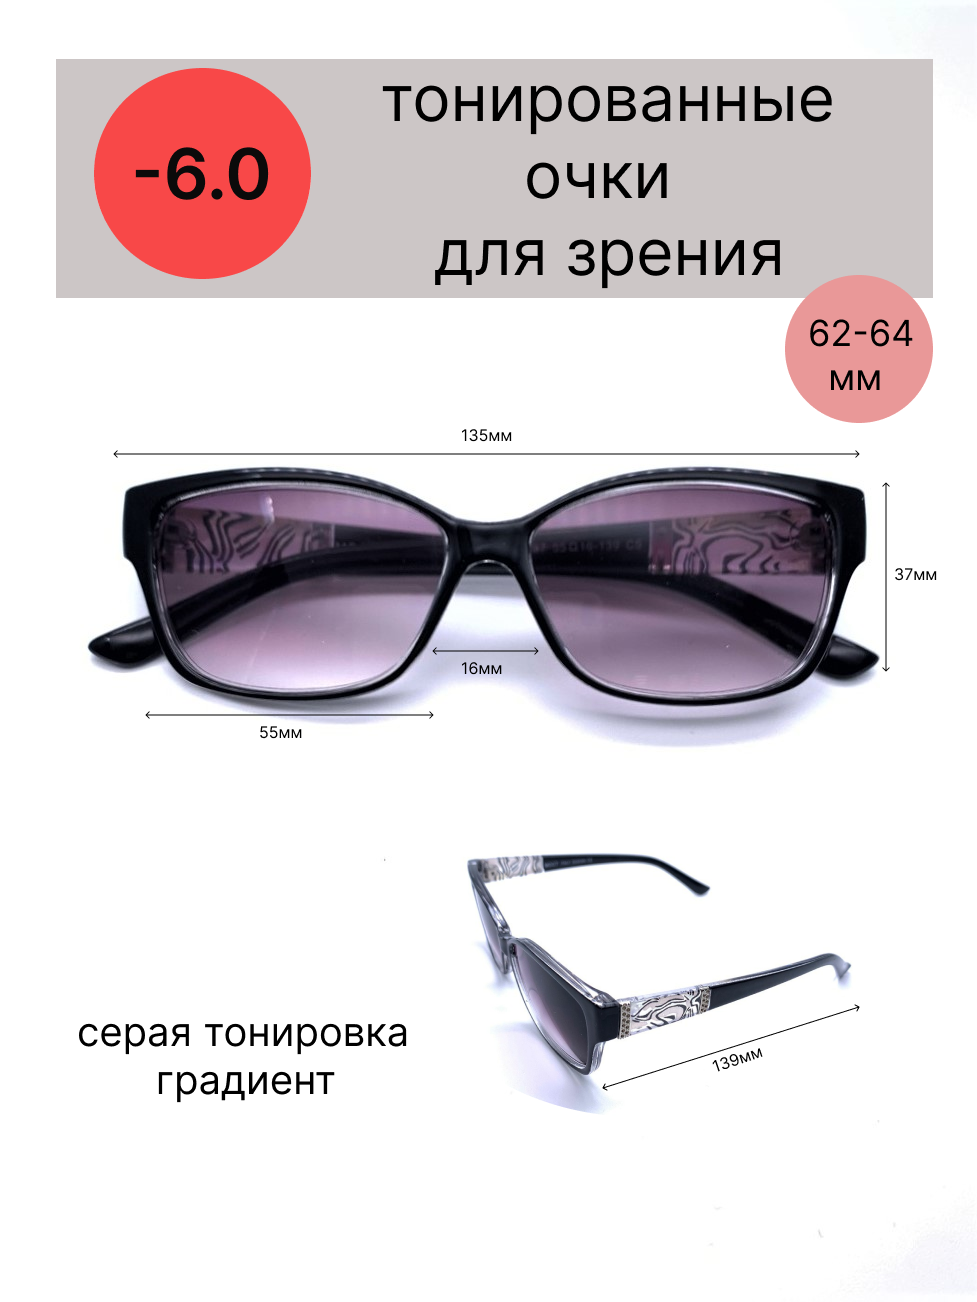 Тонированные очки с диоптриями-6.0